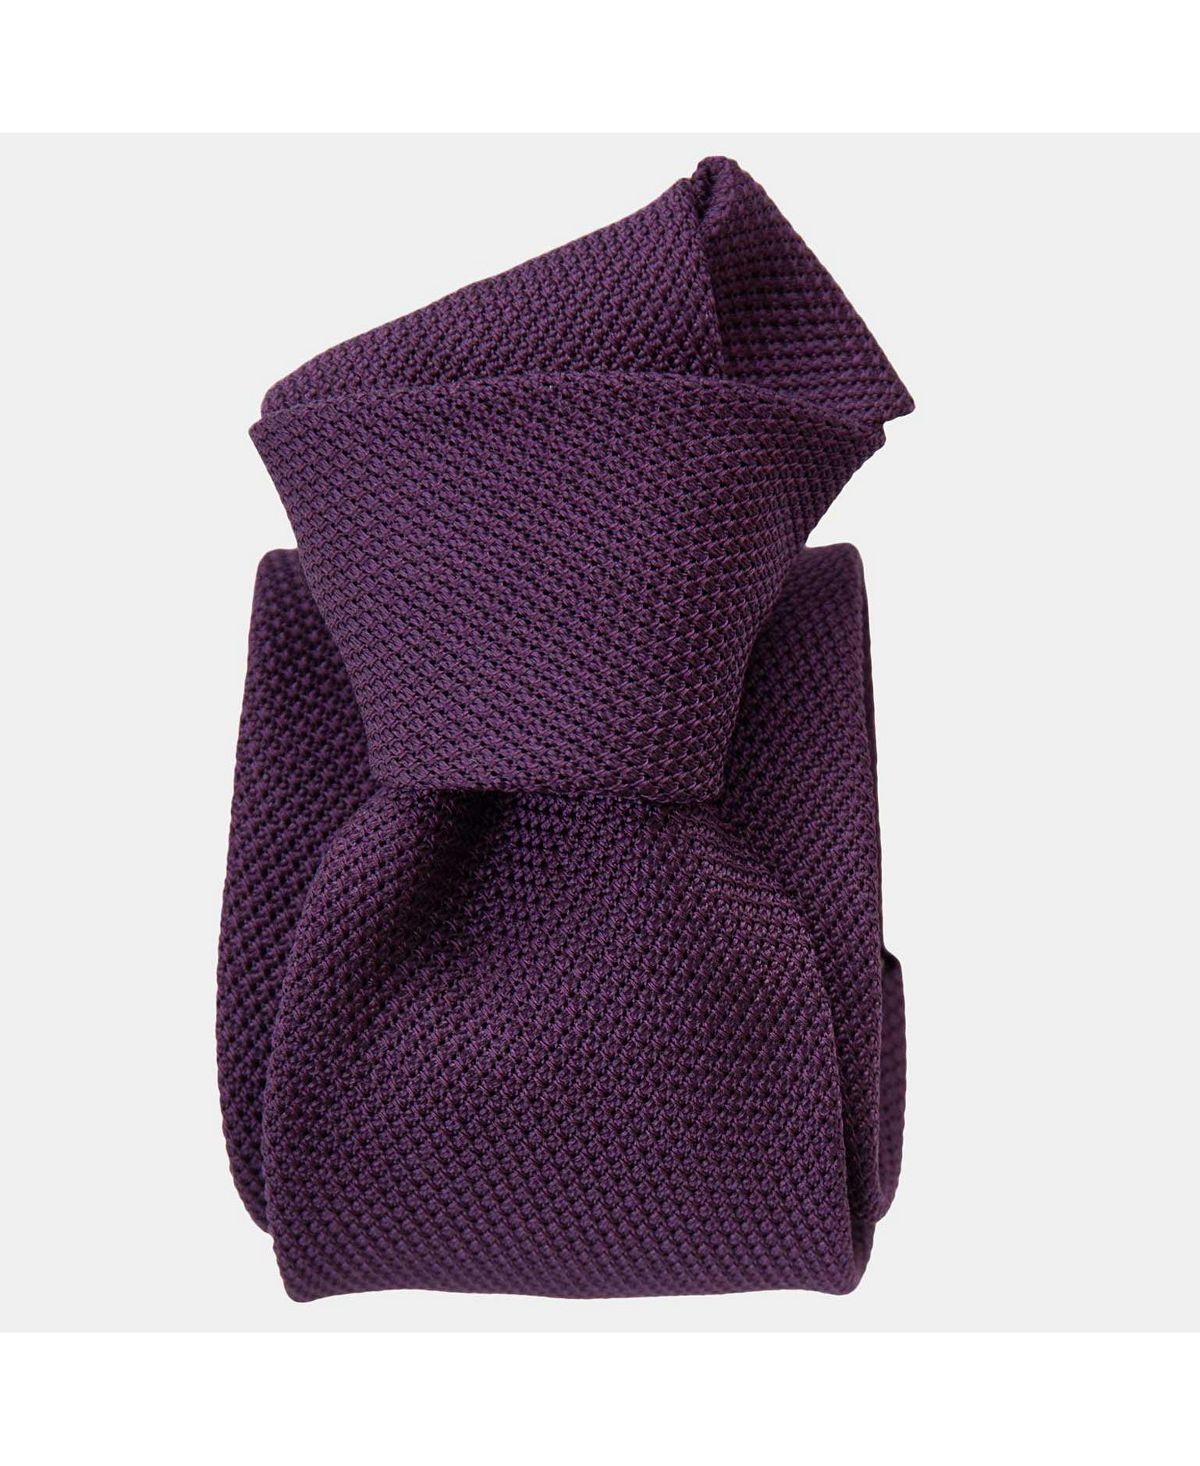 Сливовый — шелковый мужской галстук с гренадиновым узором Elizabetta пазл озеро комо италия 2000 деталей